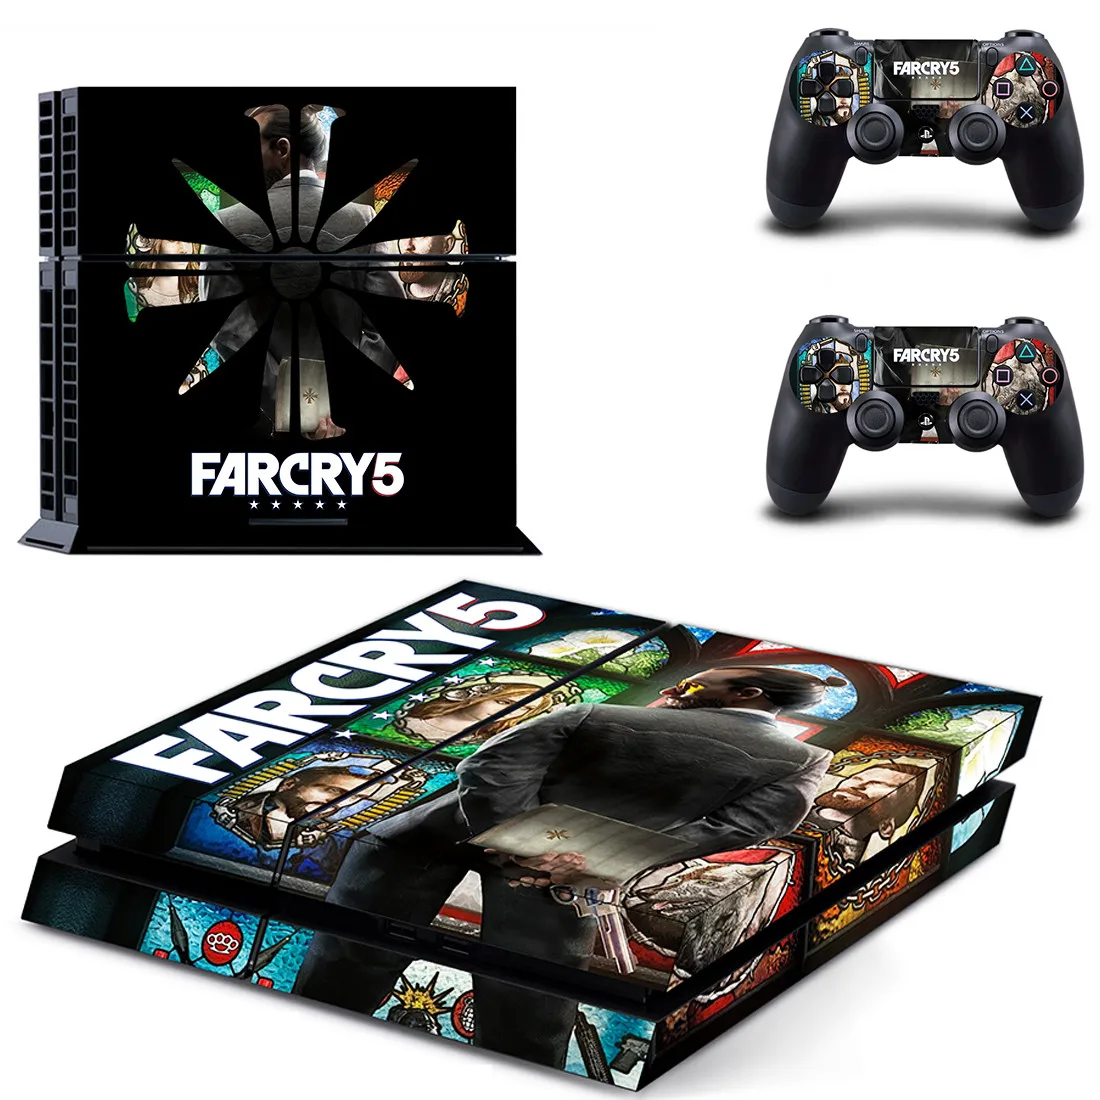 FARCRY Far Cry 5 PS4 наклейка s Play station 4 кожа наклейки для playstation 4 PS4 консоли и контроллера Скины Виниловые